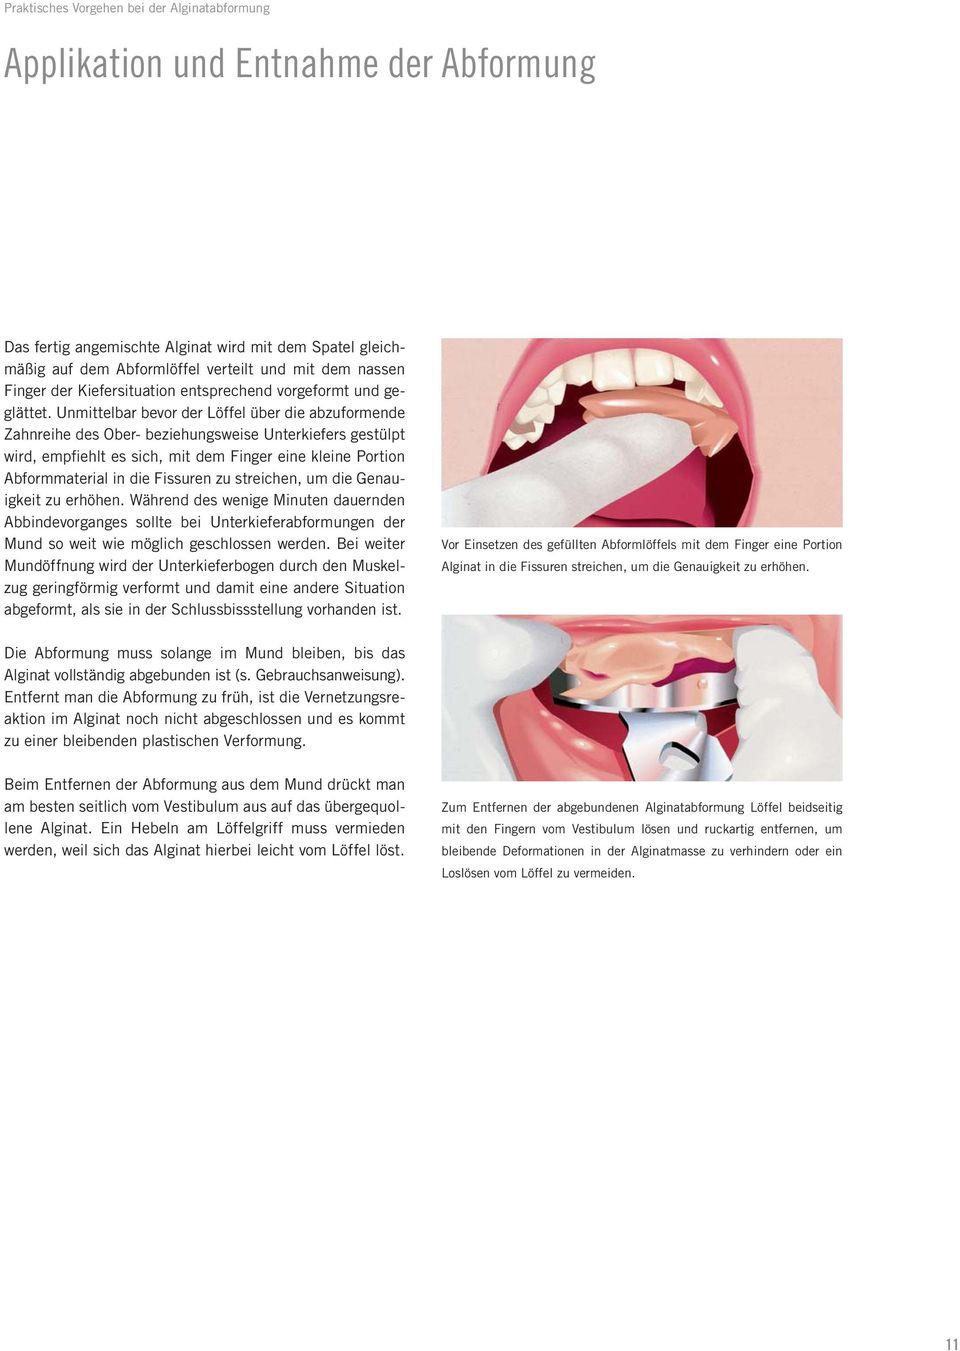 Unmittelbar bevor der Löffel über die abzuformende Zahnreihe des Ober- beziehungsweise Unterkiefers gestülpt wird, empfiehlt es sich, mit dem Finger eine kleine Portion Abformmaterial in die Fissuren